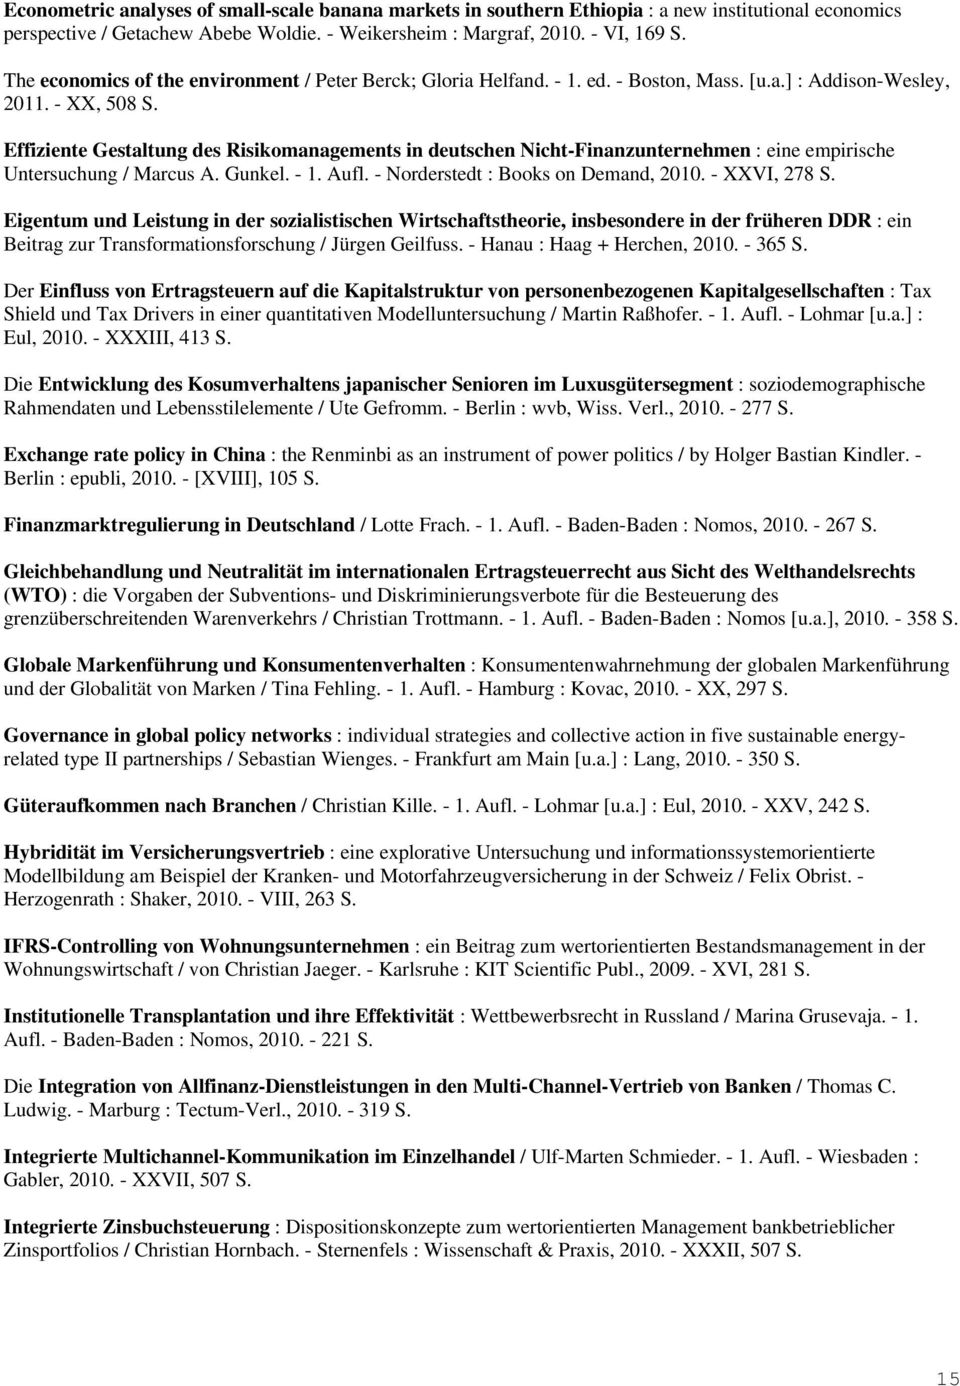 Effiziente Gestaltung des Risikomanagements in deutschen Nicht-Finanzunternehmen : eine empirische Untersuchung / Marcus A. Gunkel. - 1. Aufl. - Norderstedt : Books on Demand, 2010. - XXVI, 278 S.